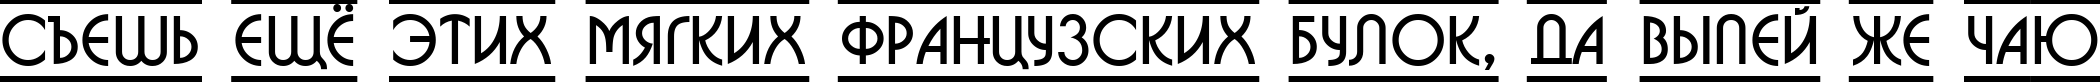 Пример написания шрифтом a_BosaNovaDcFr текста на русском